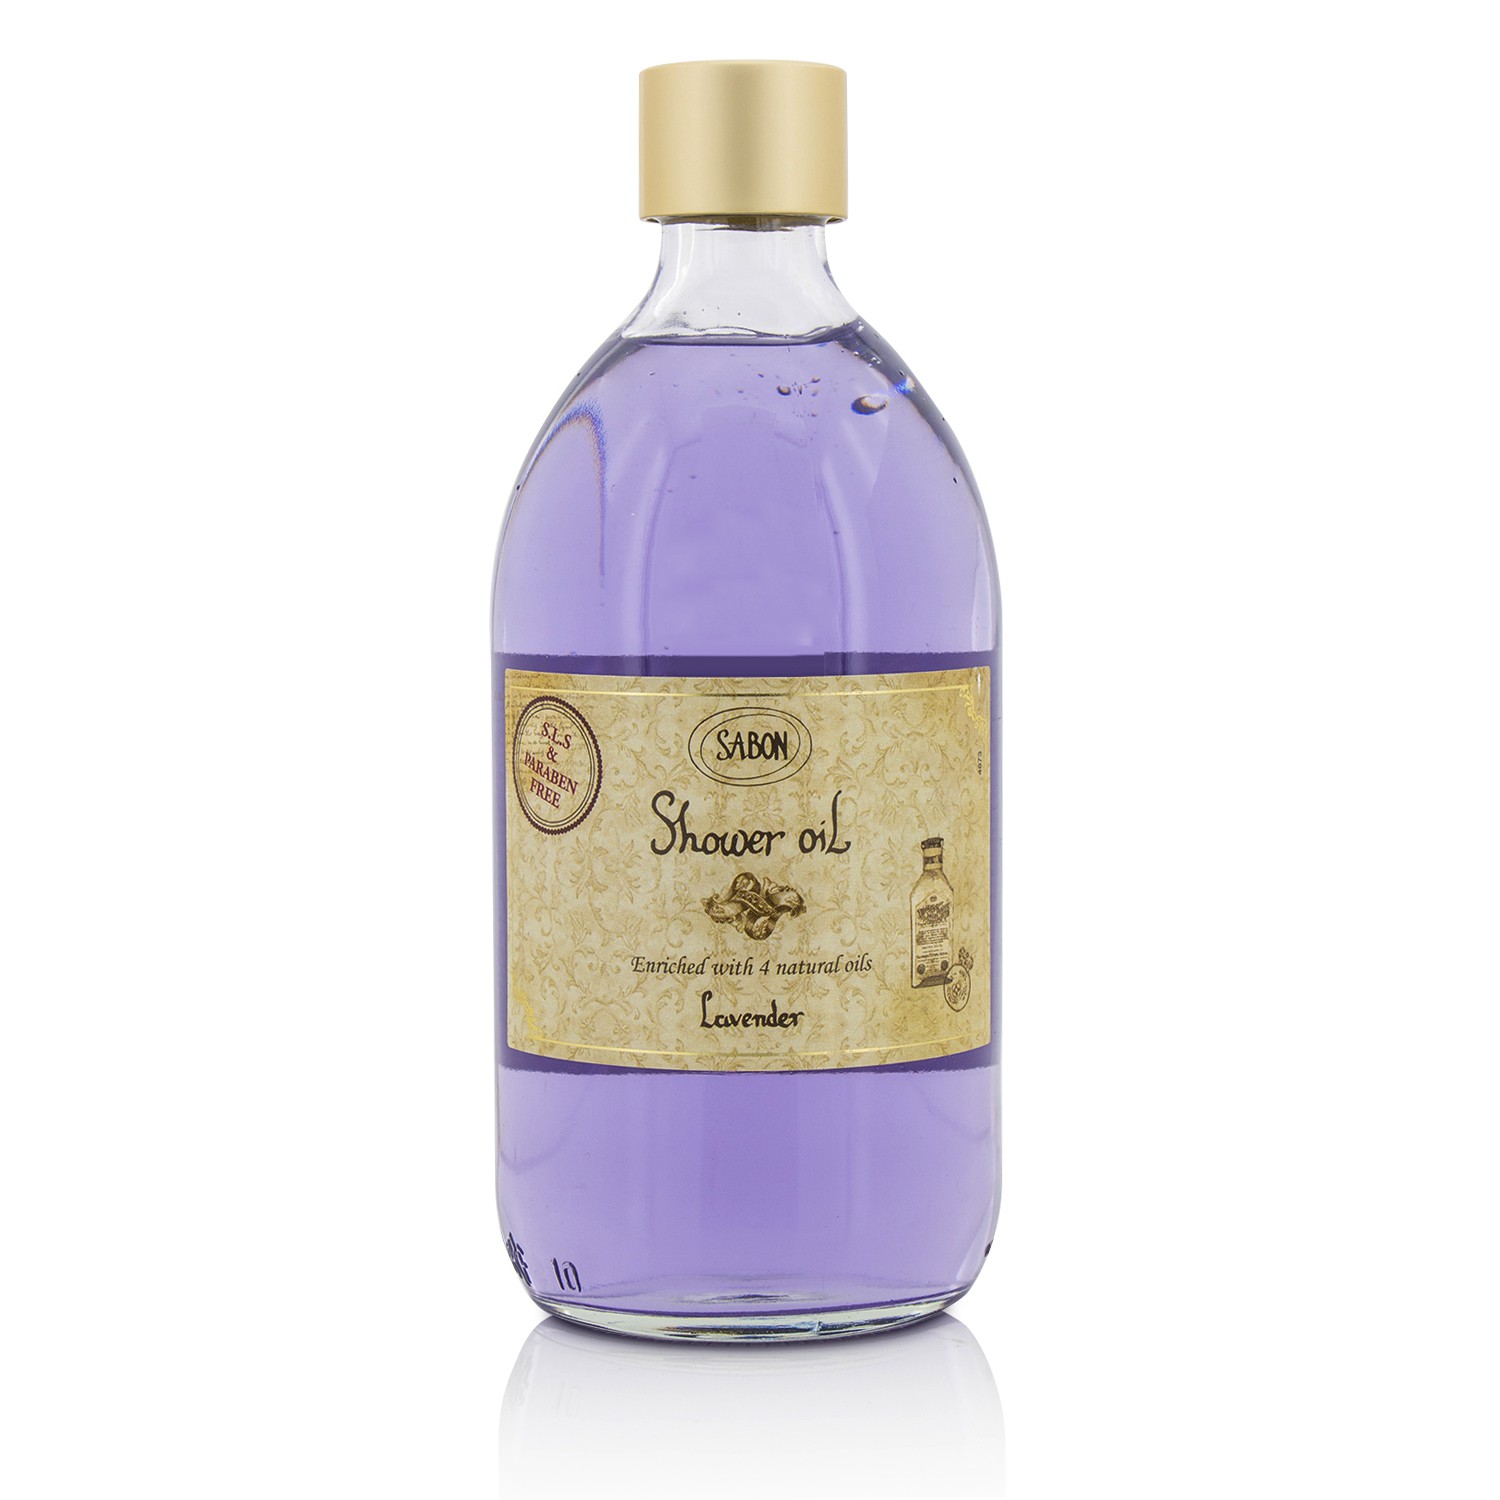 Shower Oil - Lavender Sabon Image